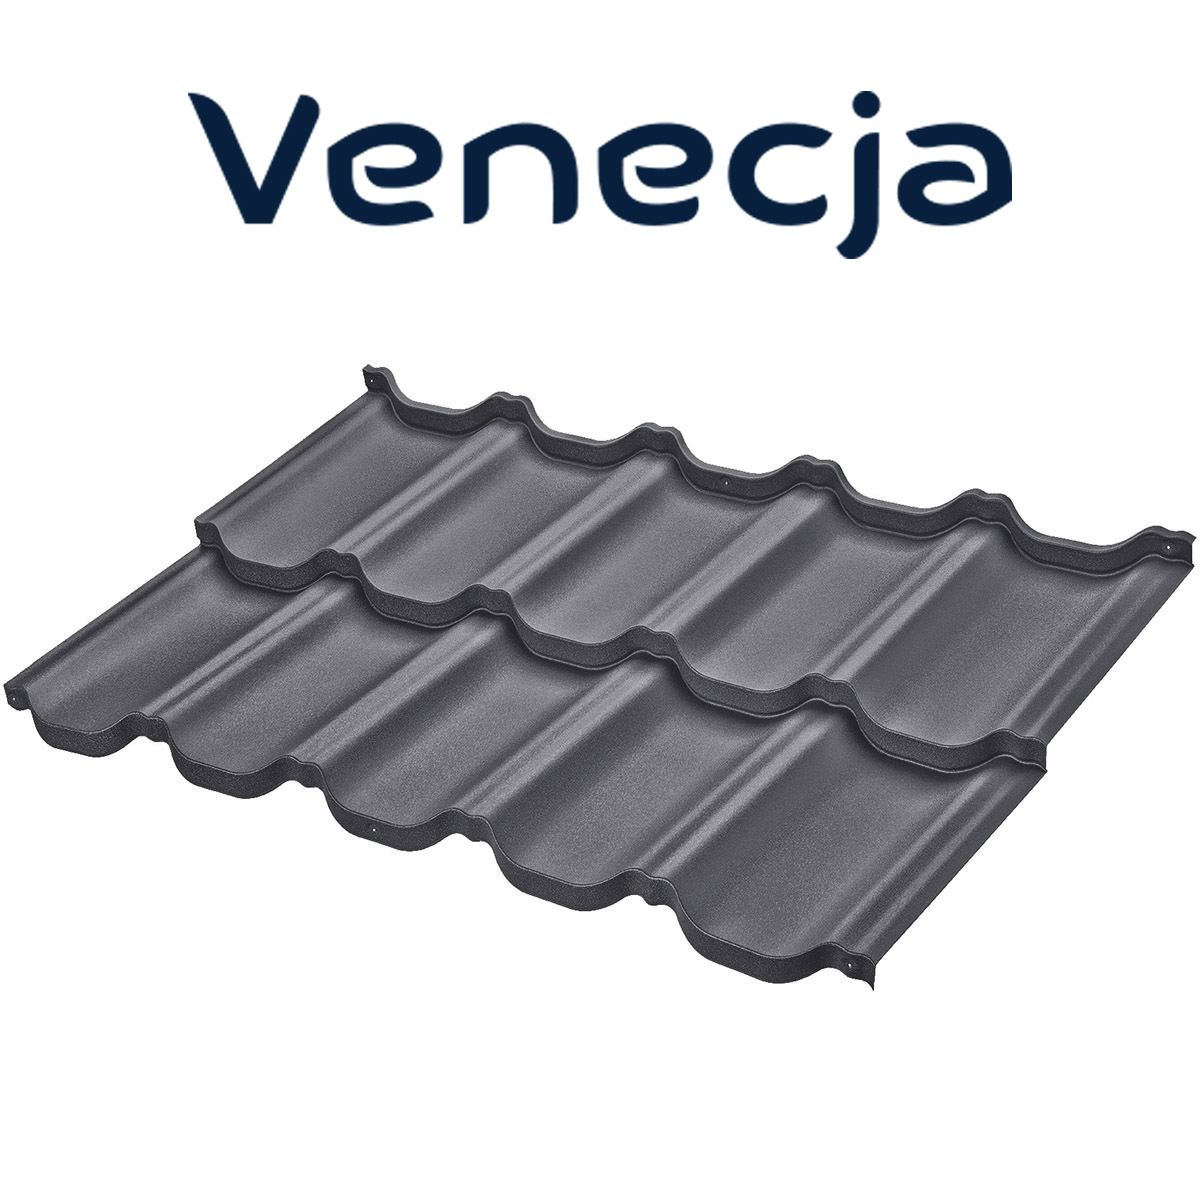 Țiglă metalică Venetia pentru acoperișuri